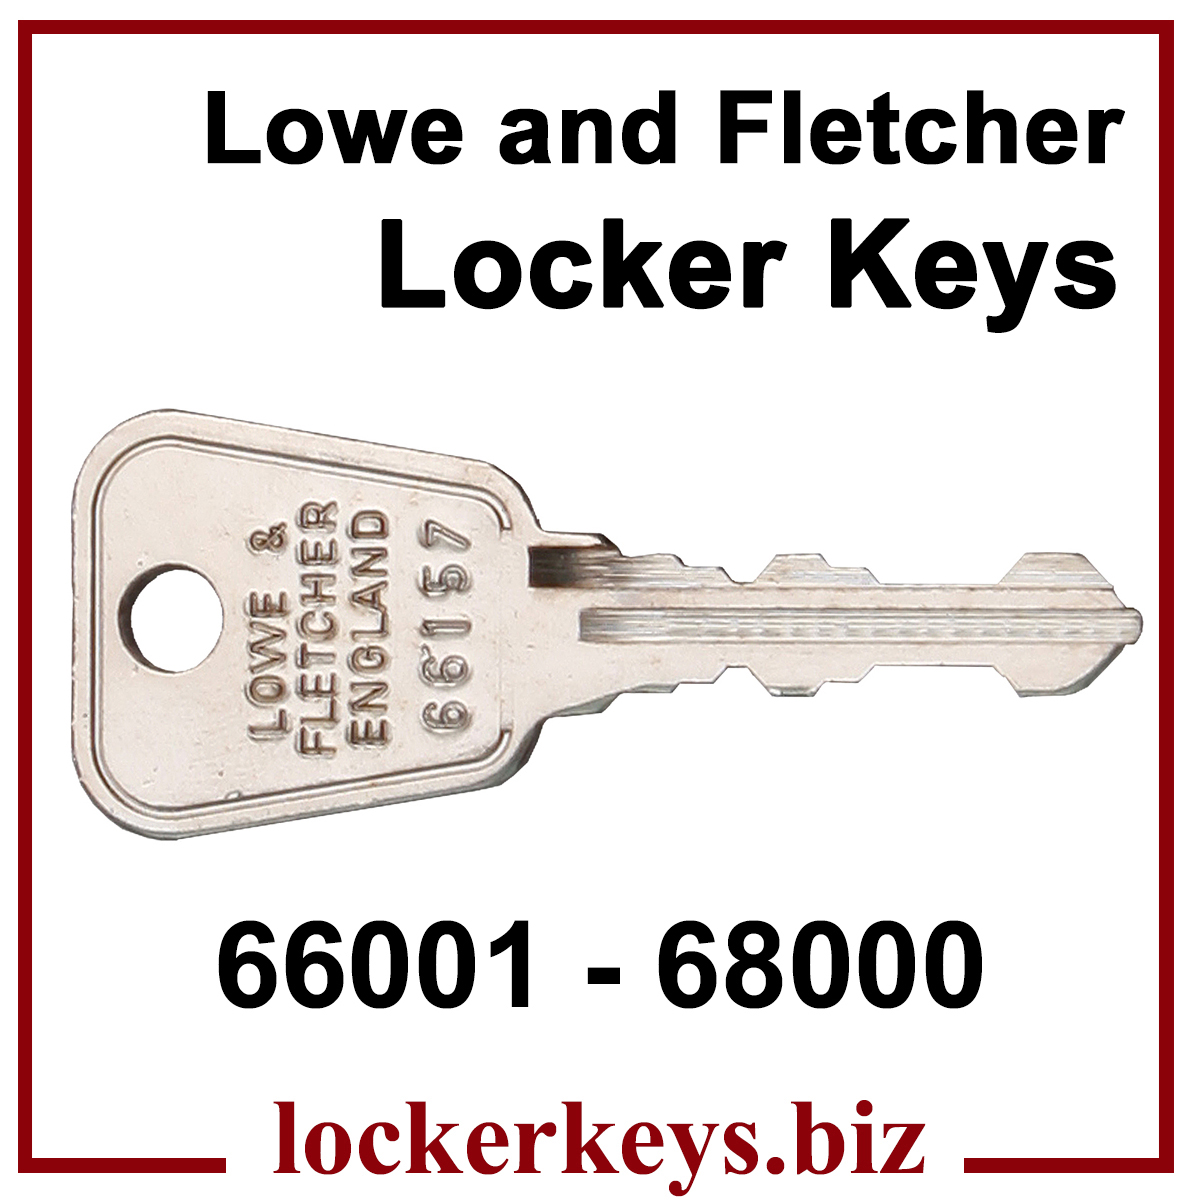 L&F England Original Locker Keys 66001 - 68000